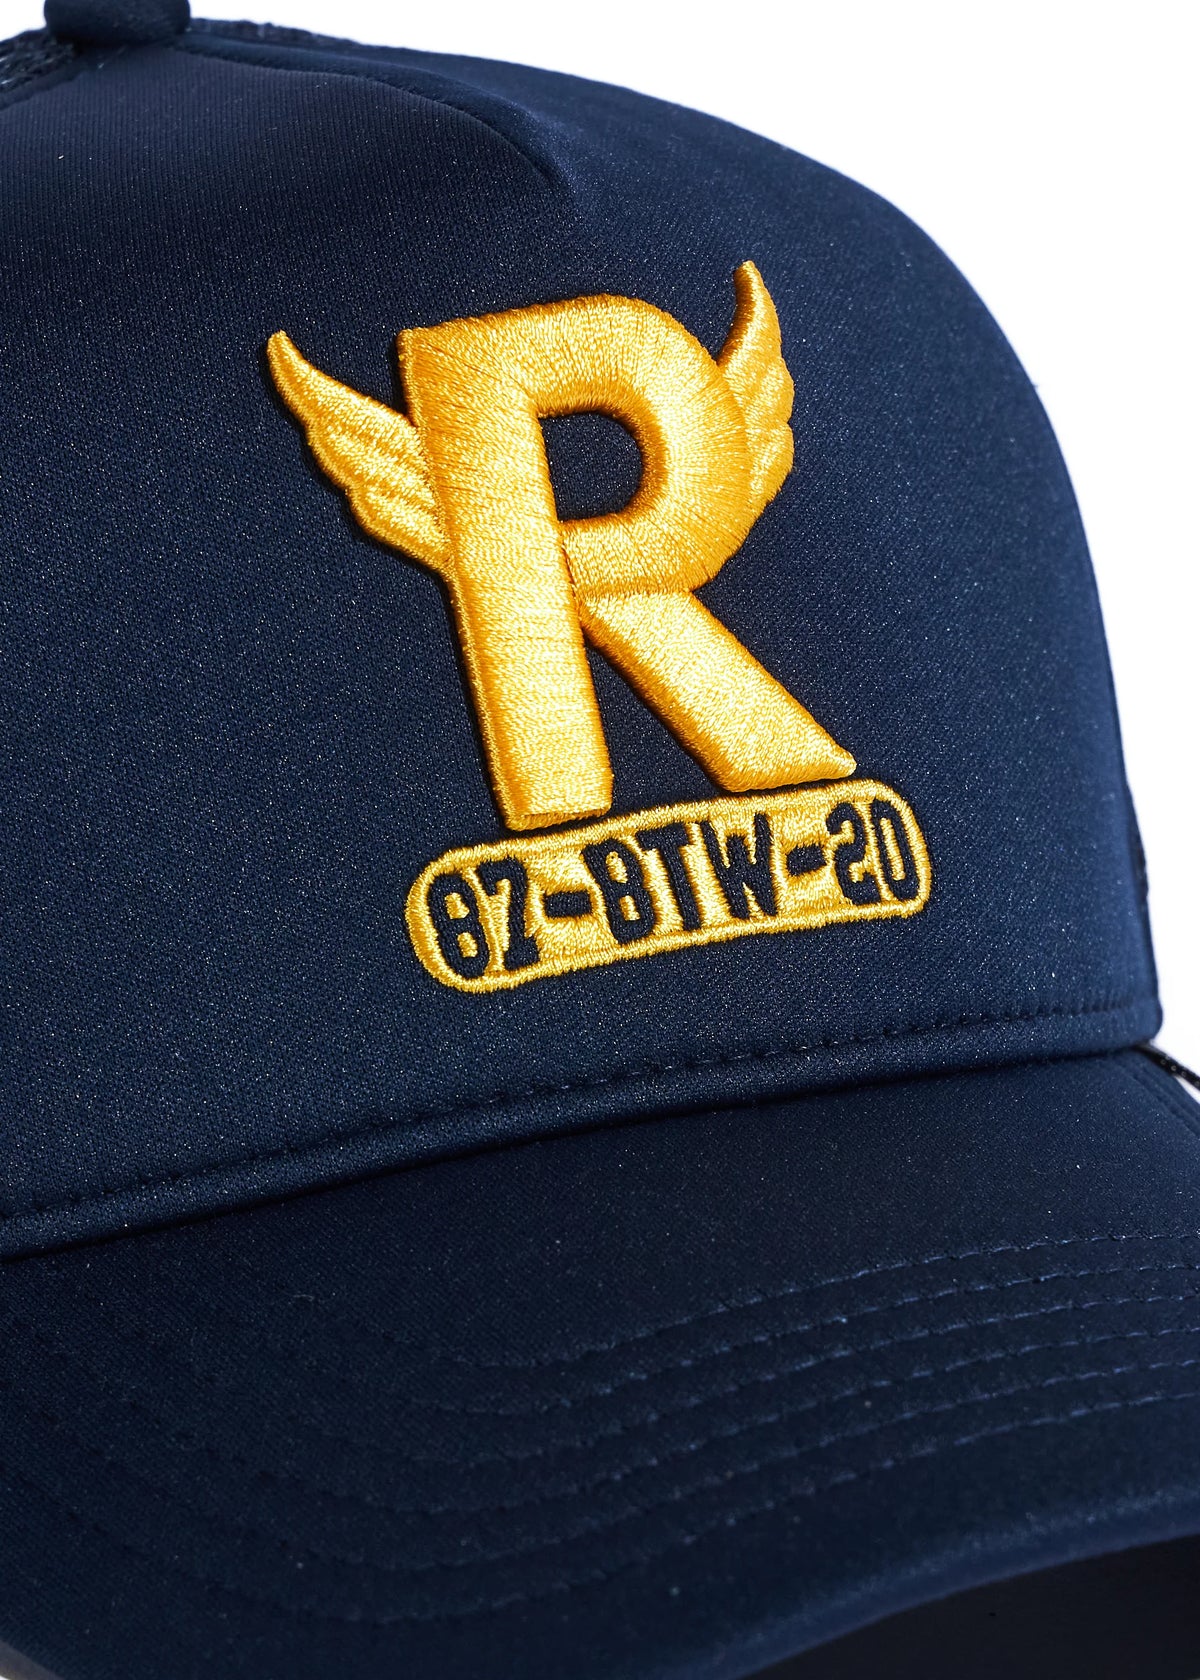 R-Wing Trucker Hat